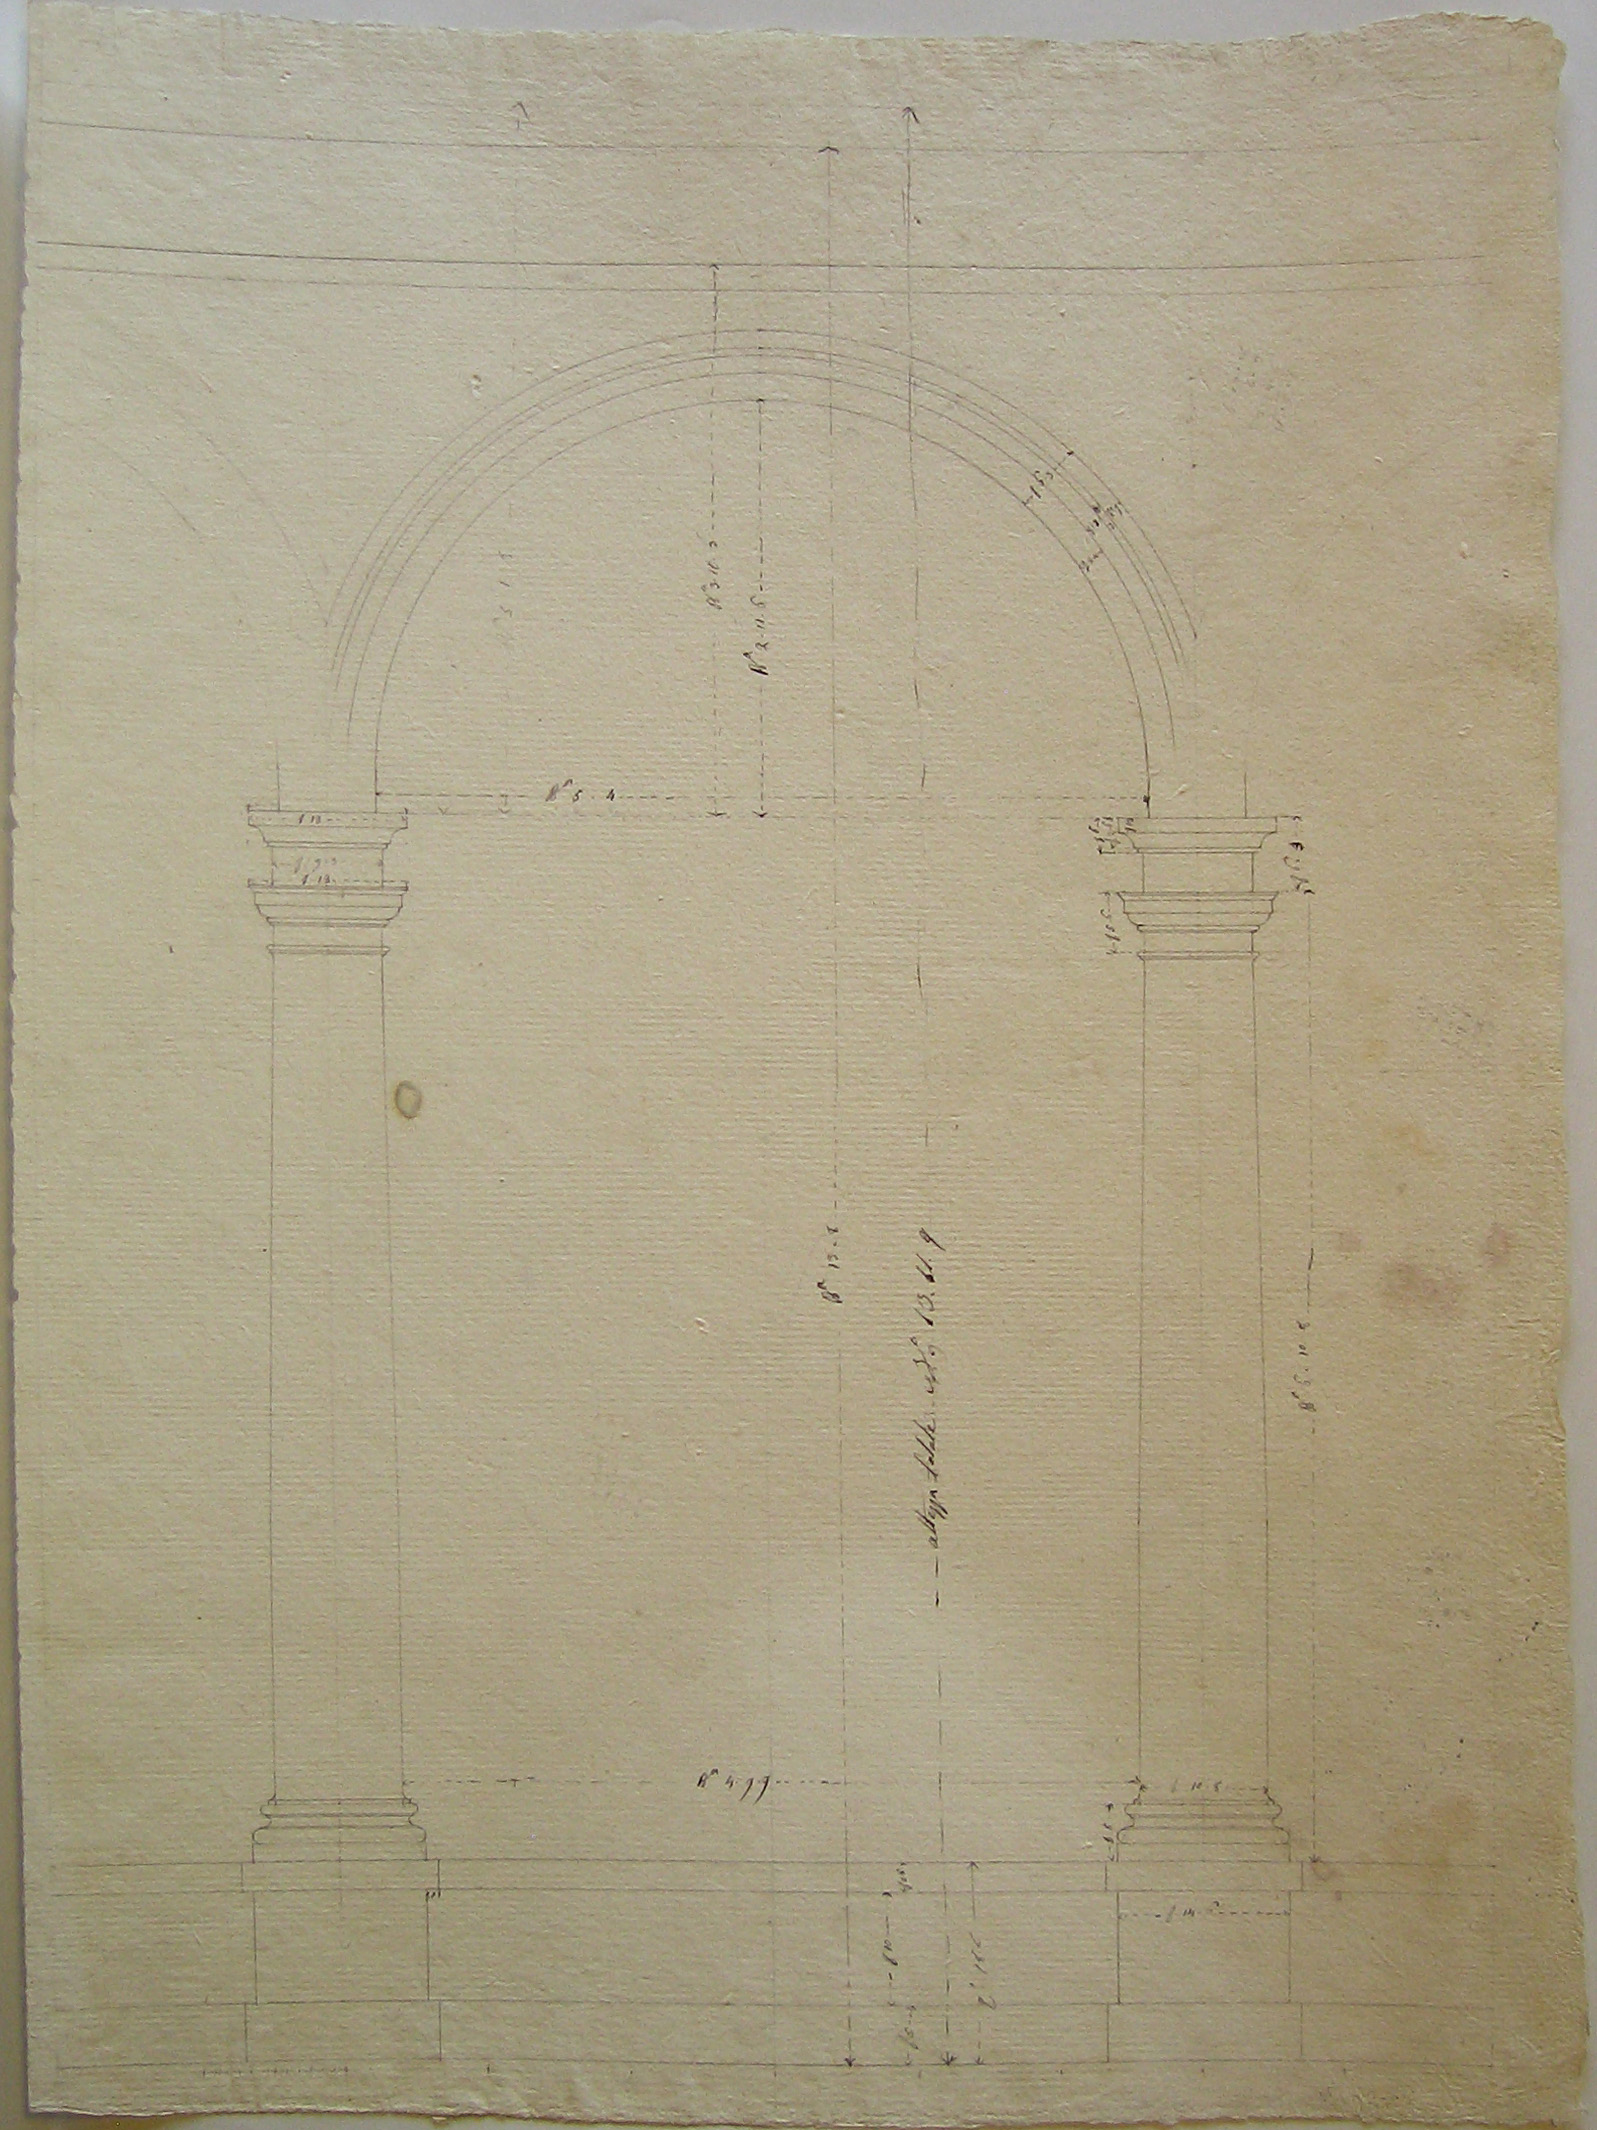 Progetto architettonico: rilievo di un'arcata di portico (disegno architettonico) di Cagnola Luigi (attribuito) (secc. XVIII/XIX)